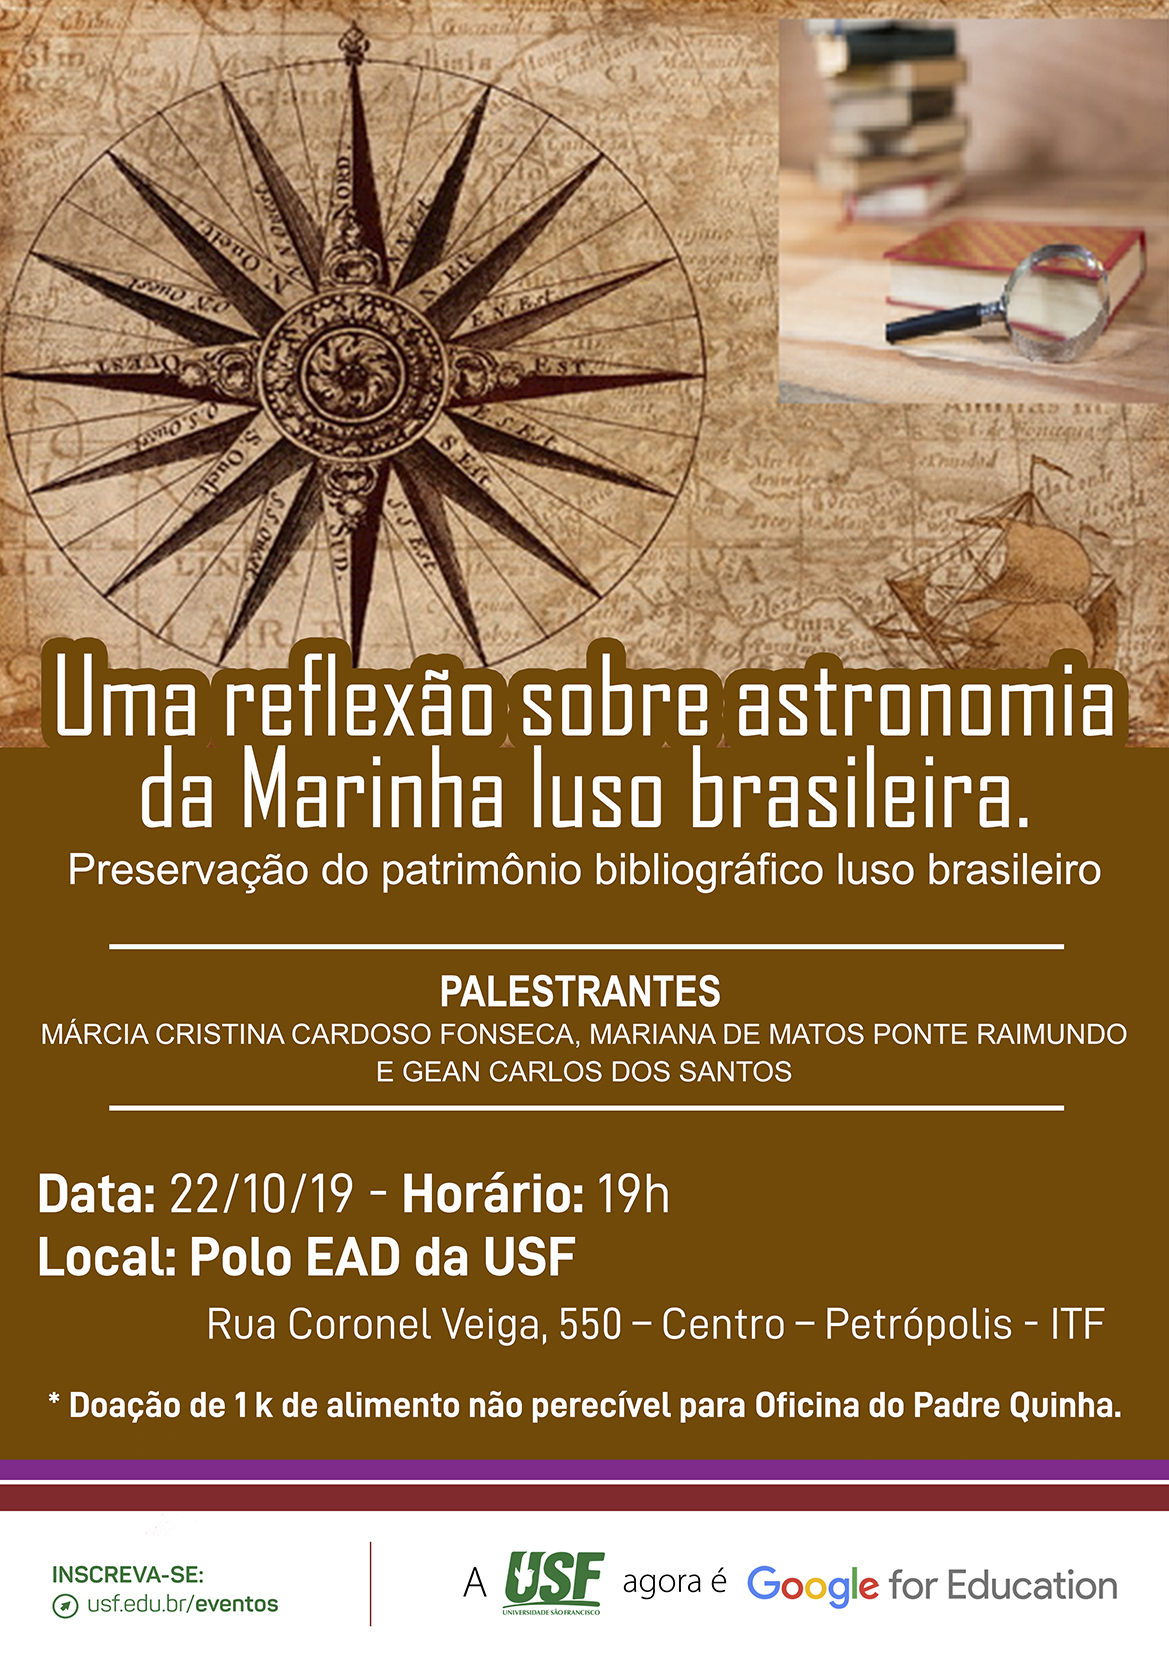 Palestra: Uma reflexão sobre astronomia da Marinha luso brasileira